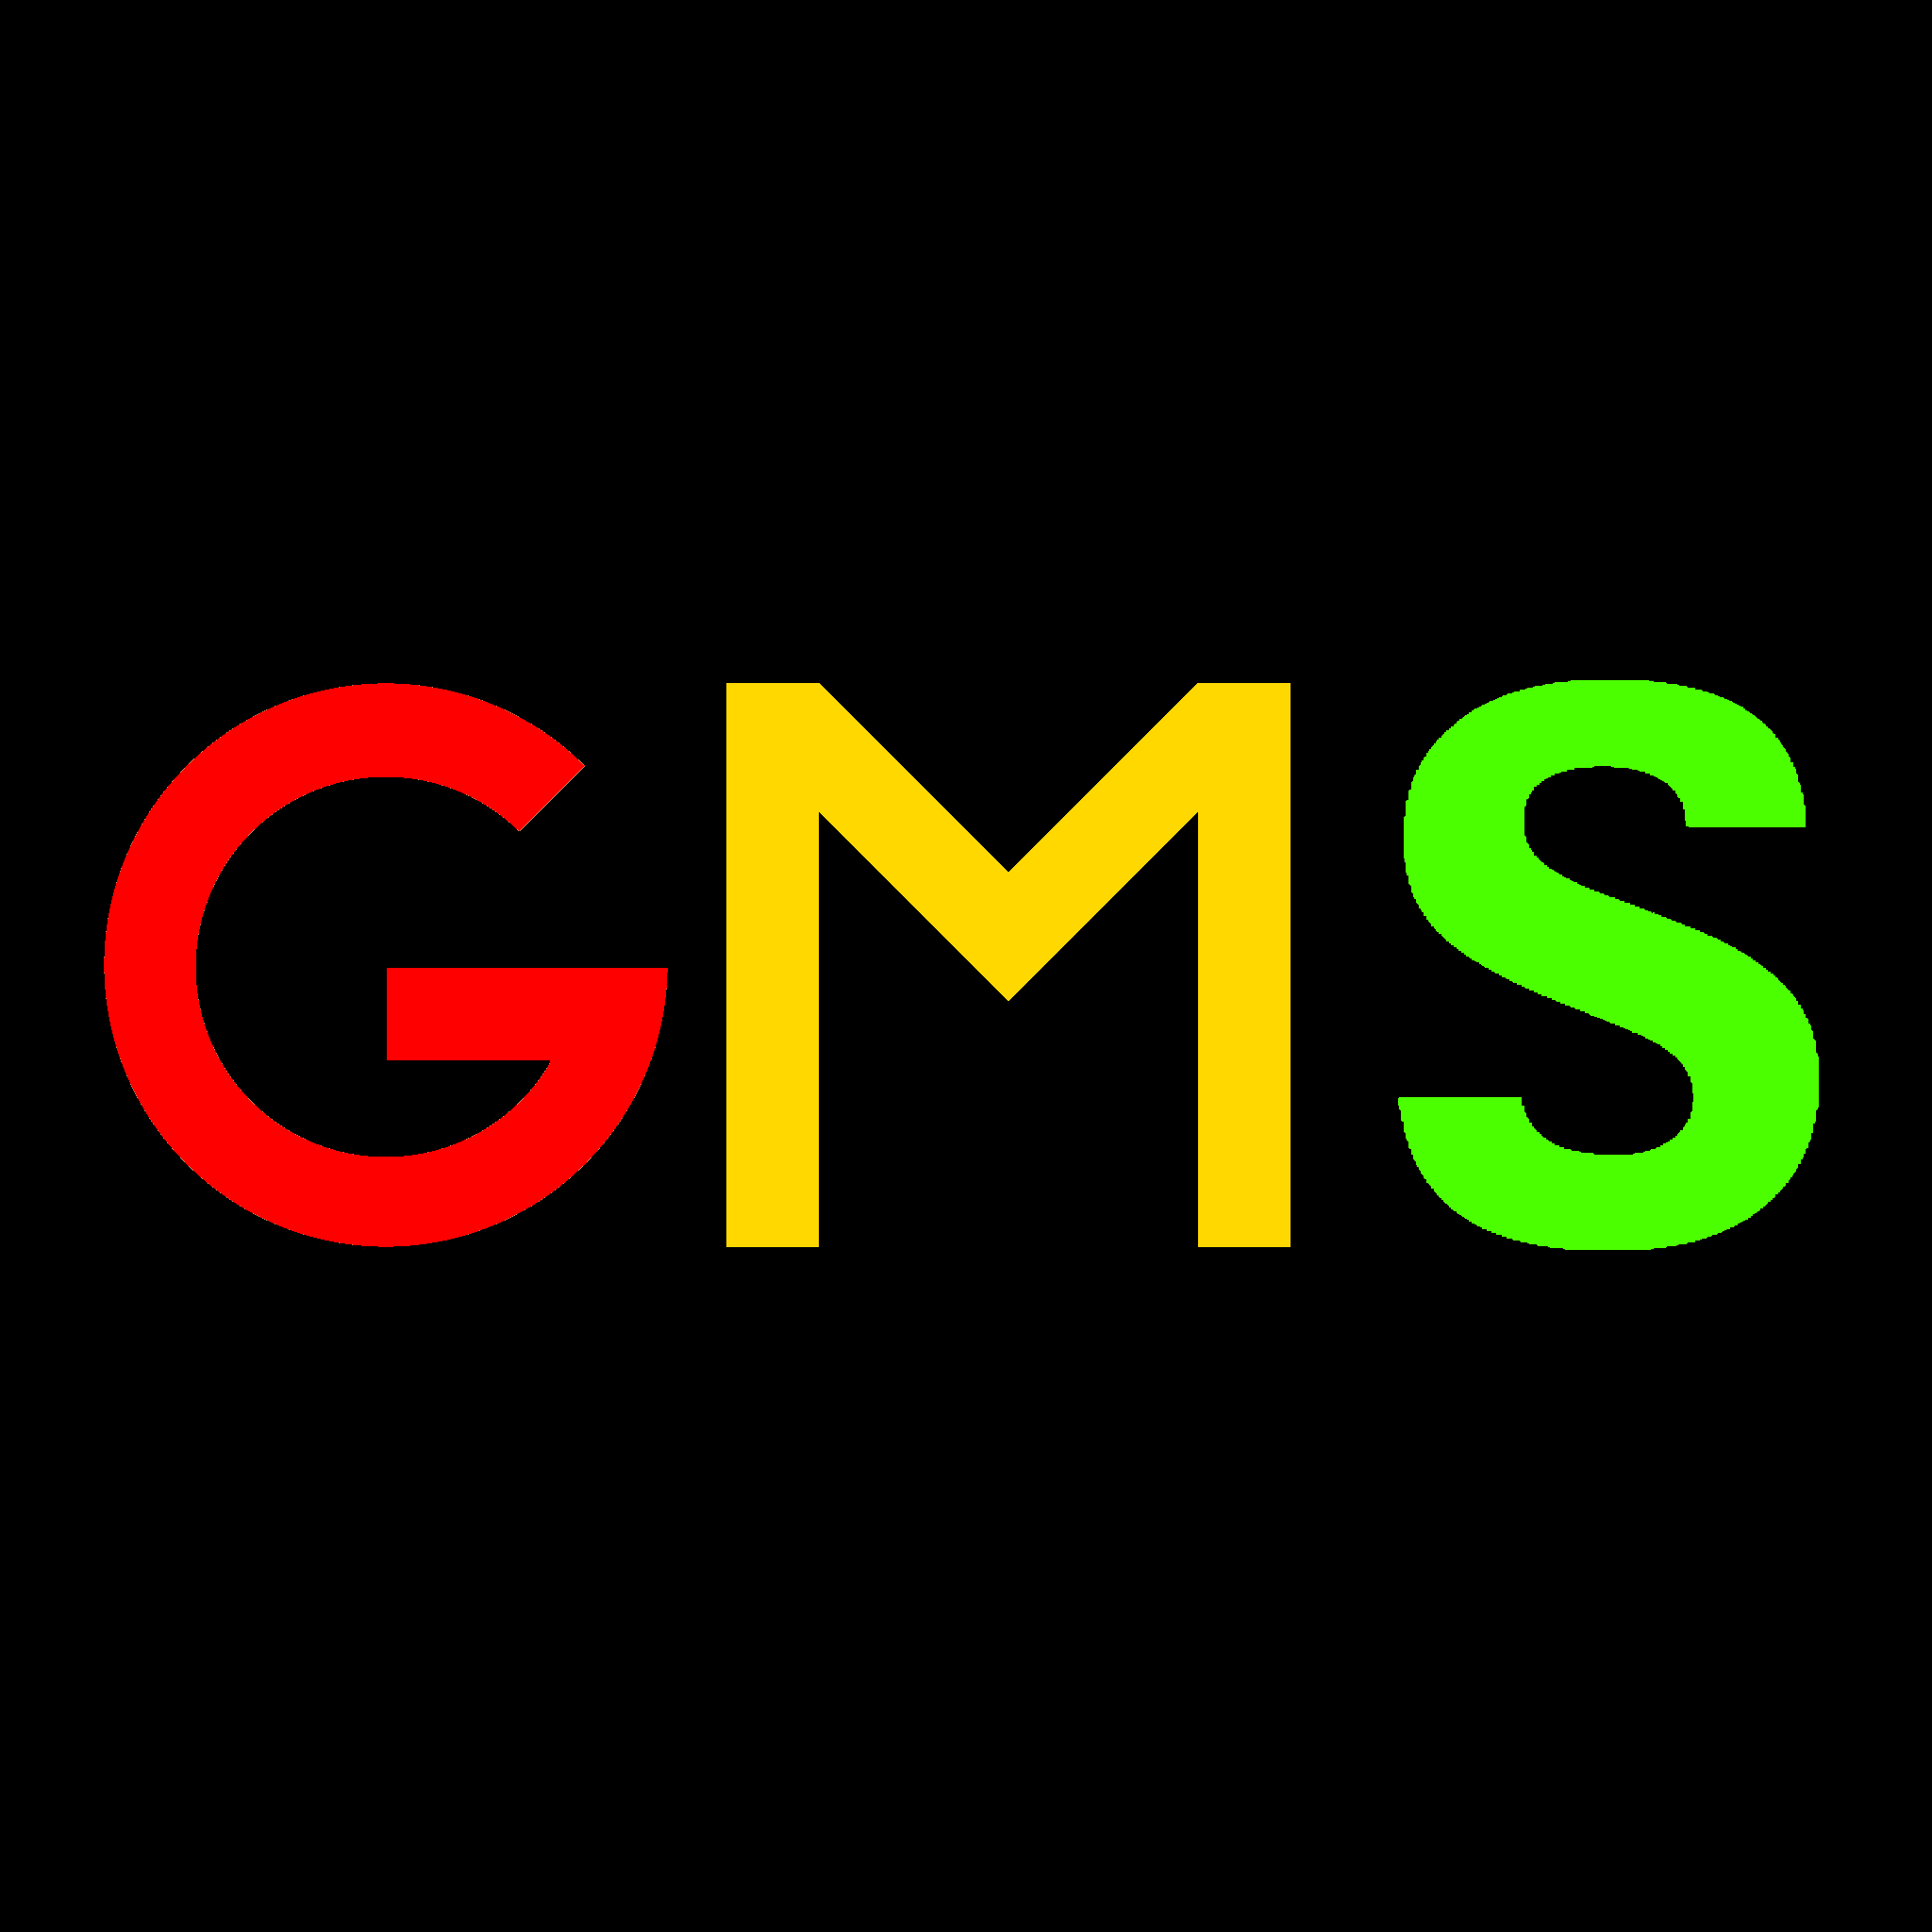 GMS PLUGIN .free download